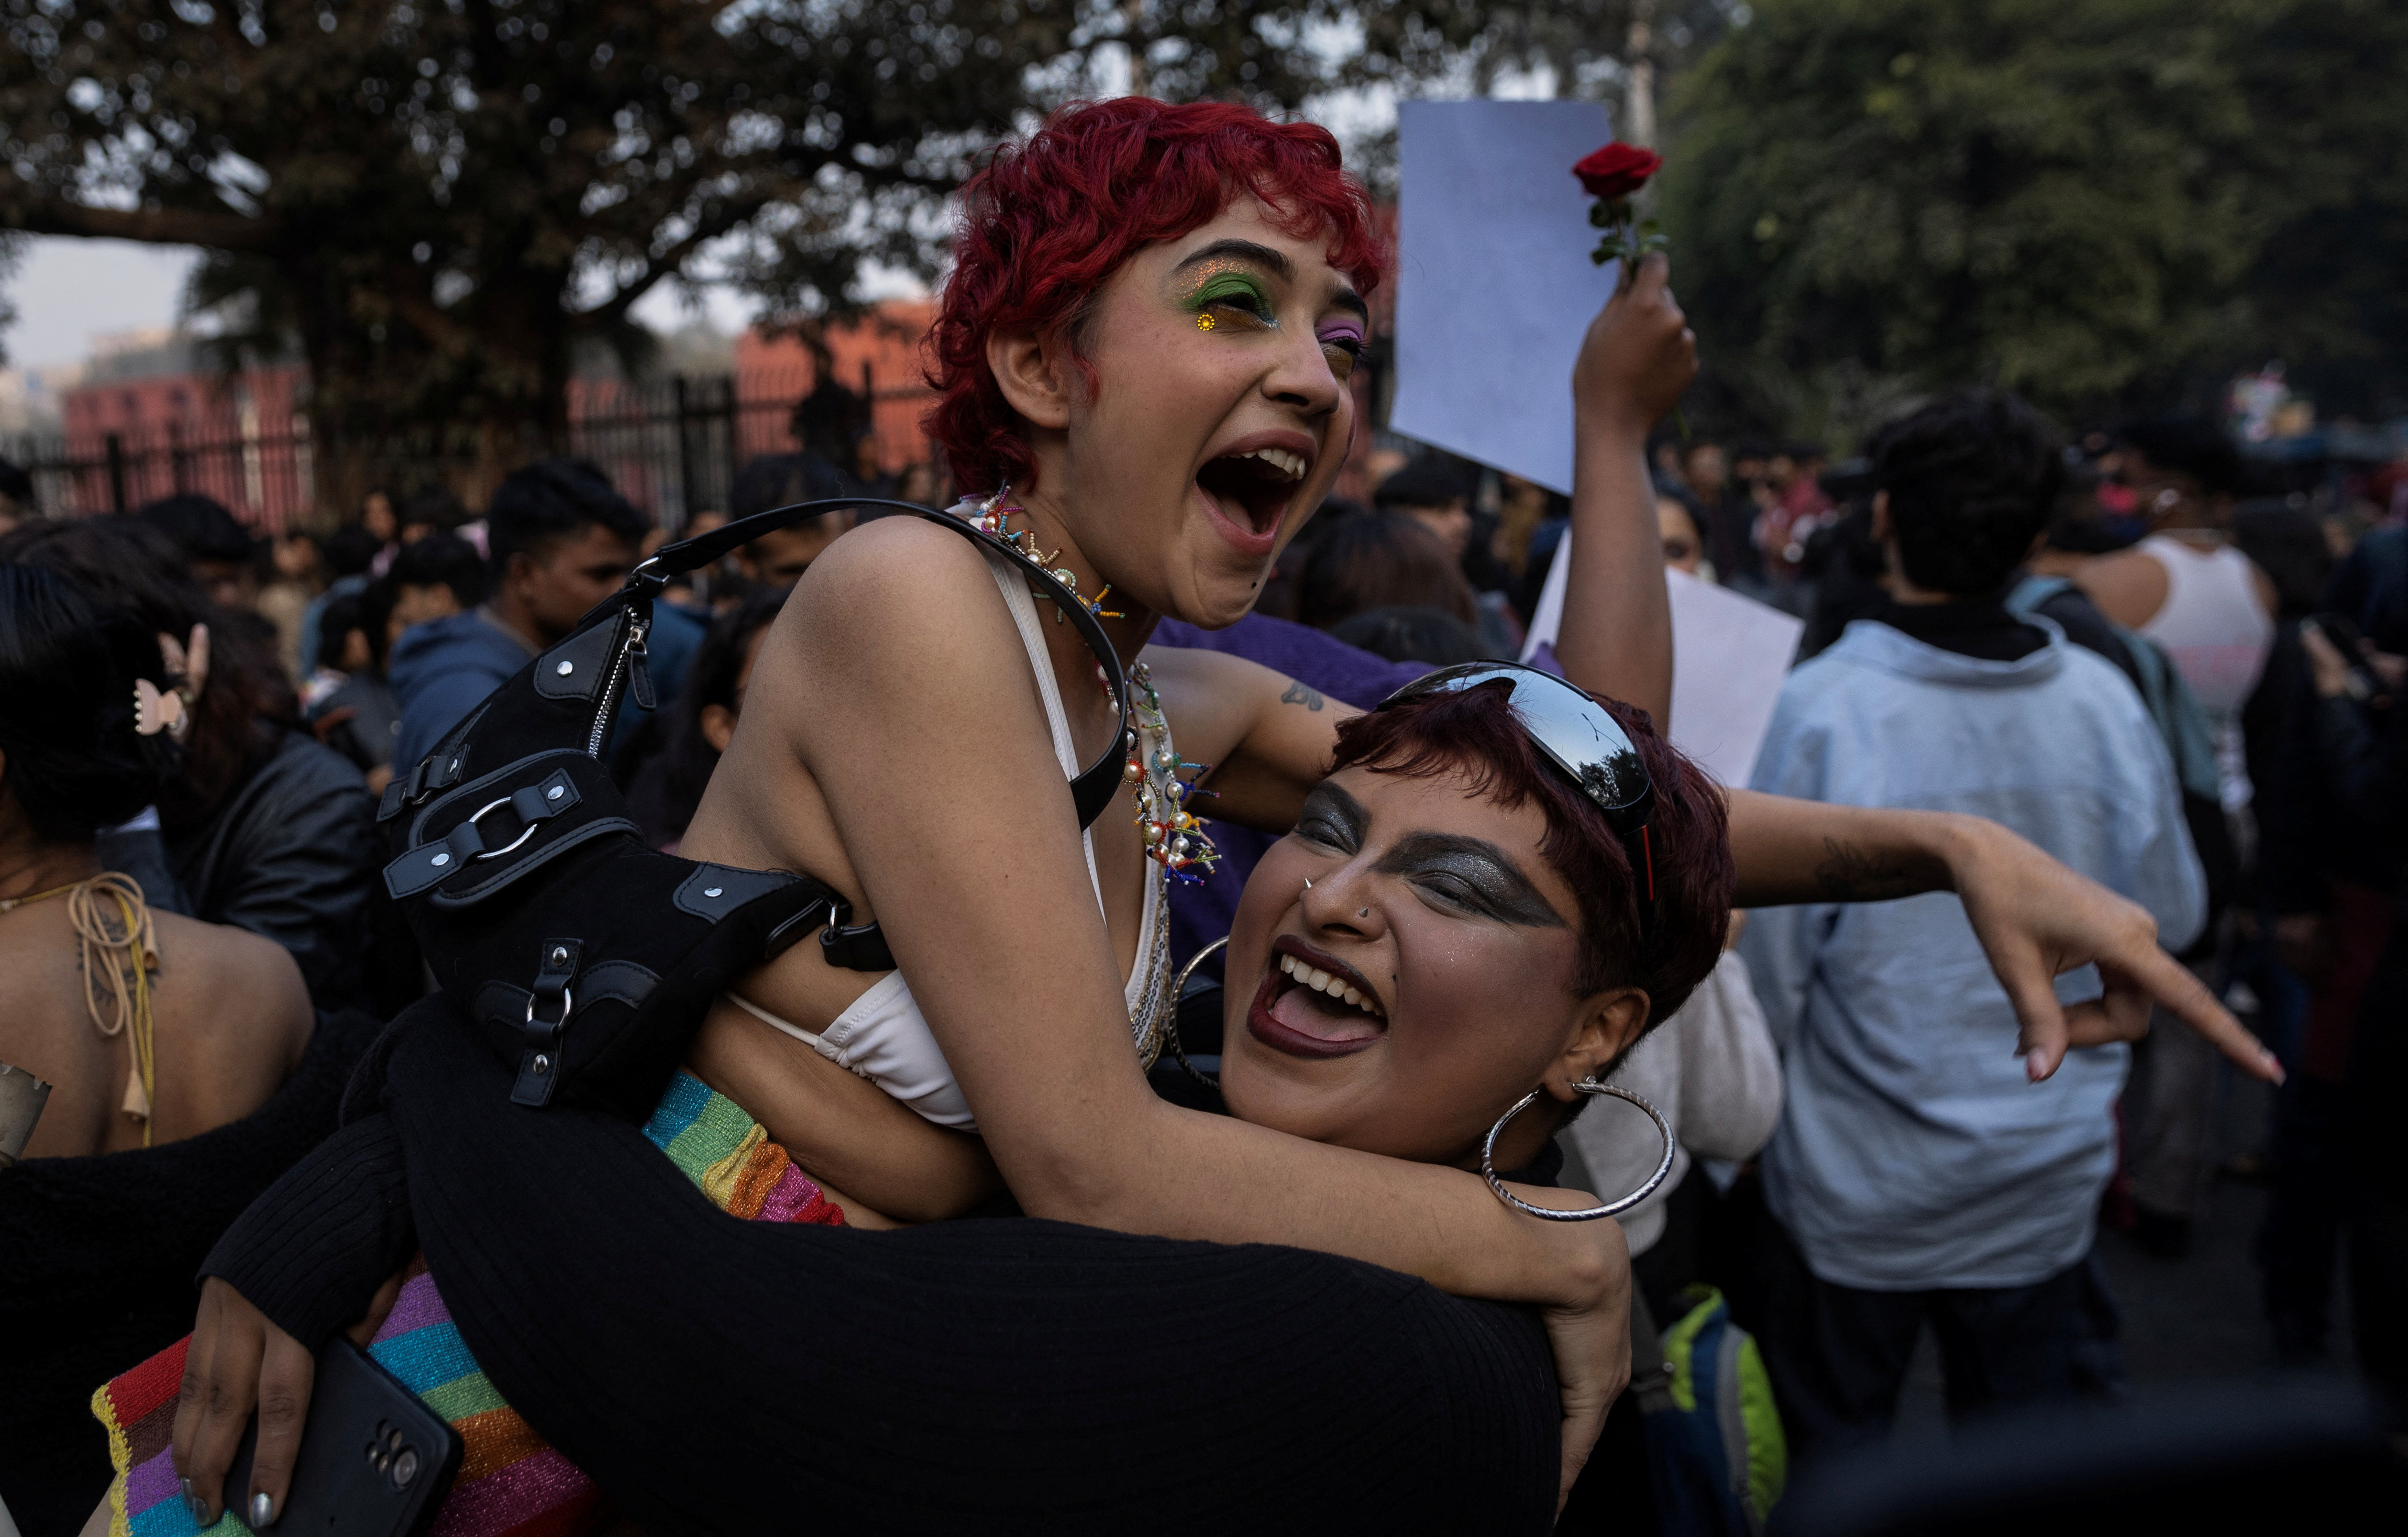 Existen parejas que tienen orientaciones sexuales disidentes REUTERS/Adnan Abidi